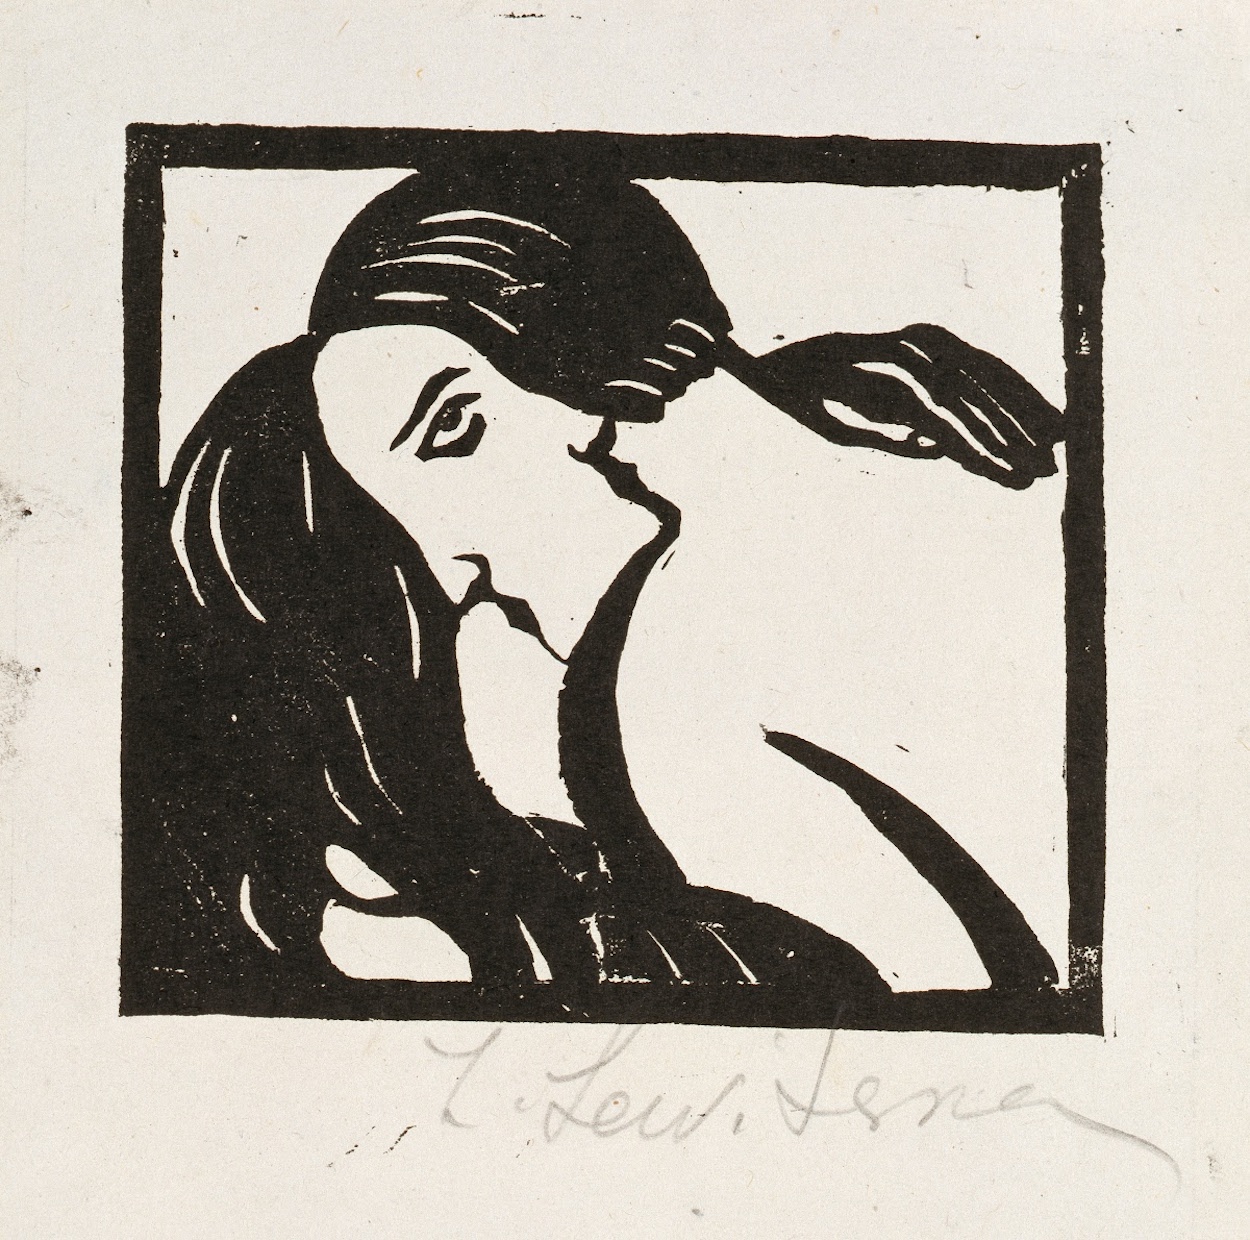 Der Kuss by Sofia Levytska - 1920er - 5,3 x 13,5 cm Nationales Kunstmuseum der Ukraine